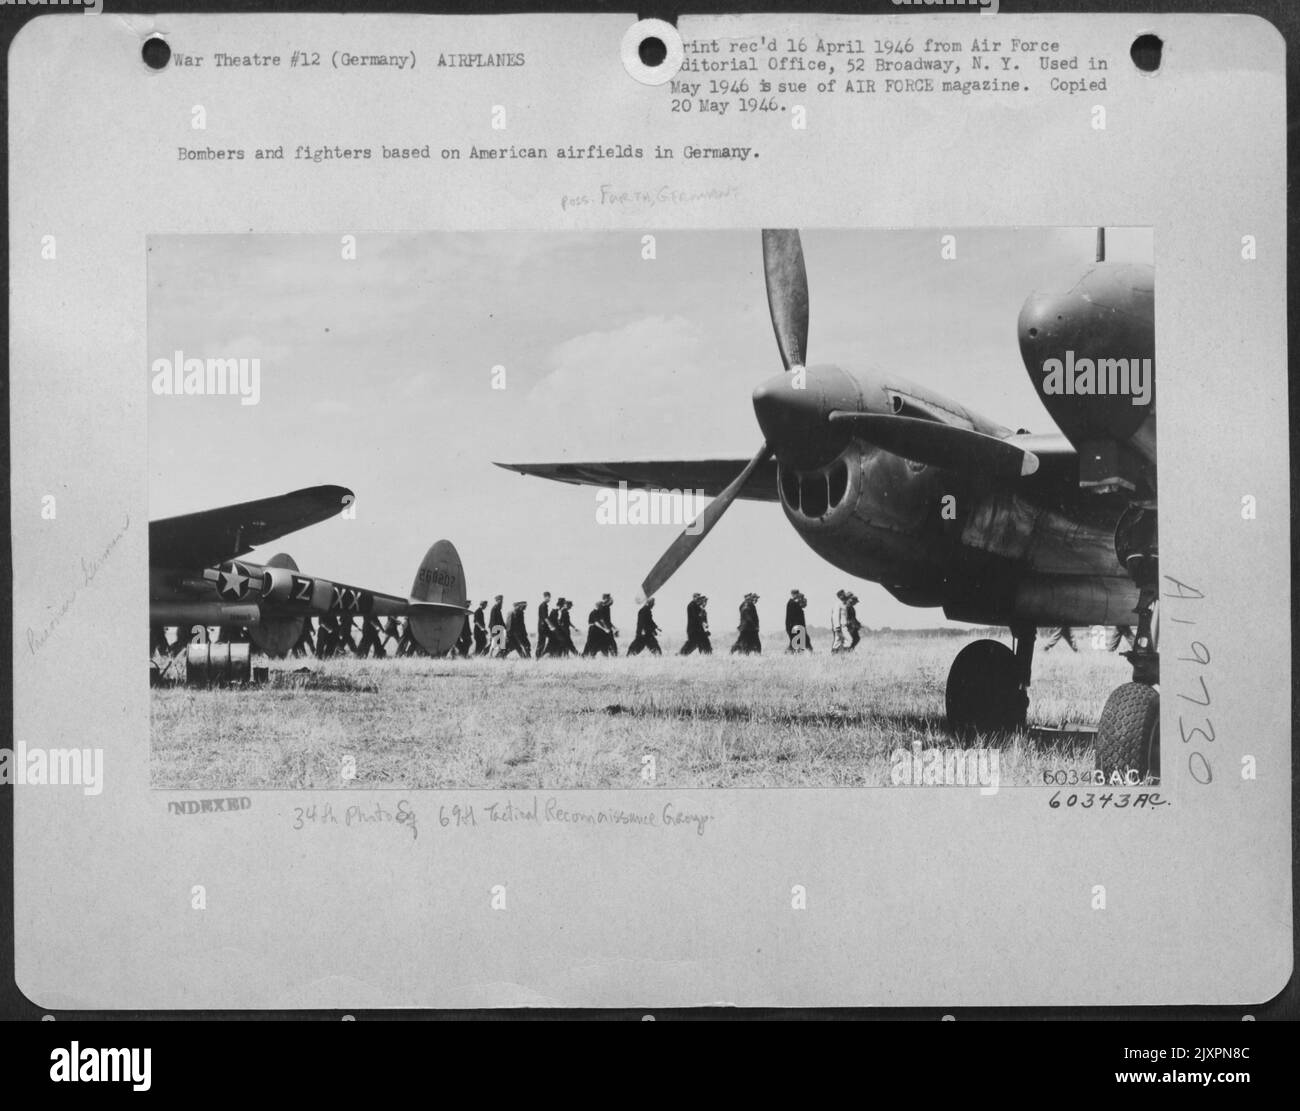 Bomber Und Jagdflugzeuge Auf Amerikanischen Flugplätzen In Deutschland. [34. Bildq. 69. Tact. Aufklärungs-Gp. Furth, Deutschland] Stockfoto